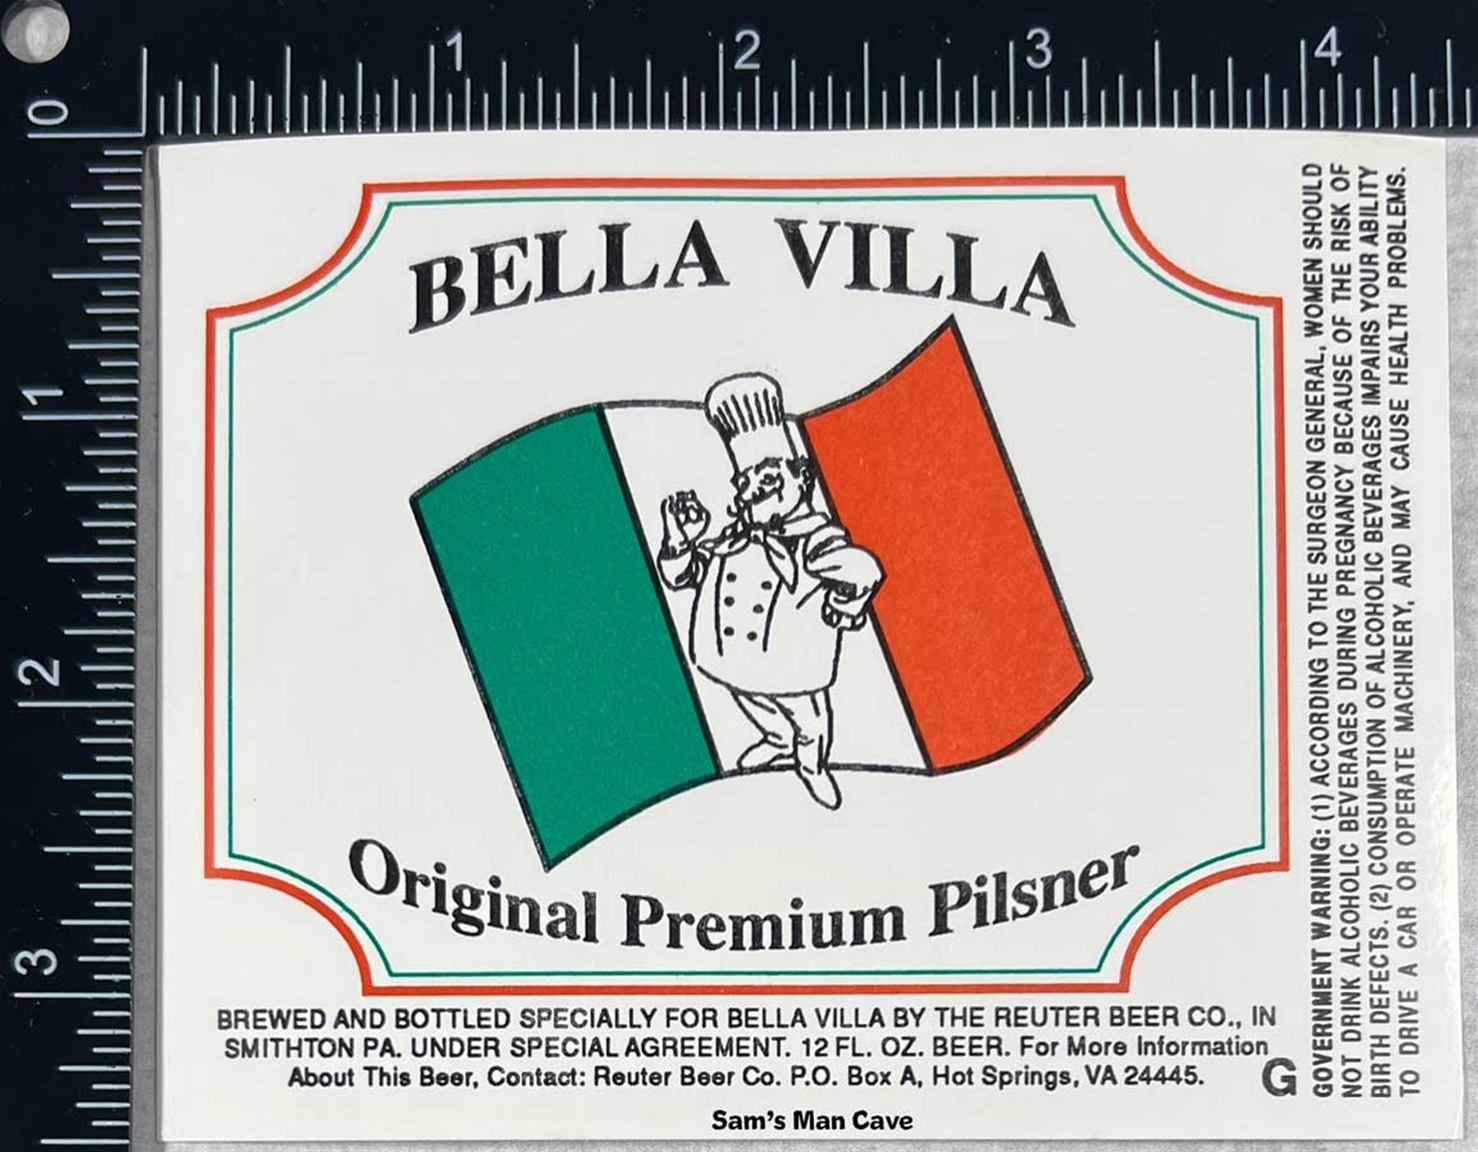 Bella Villa Original Premium Pilsner Label